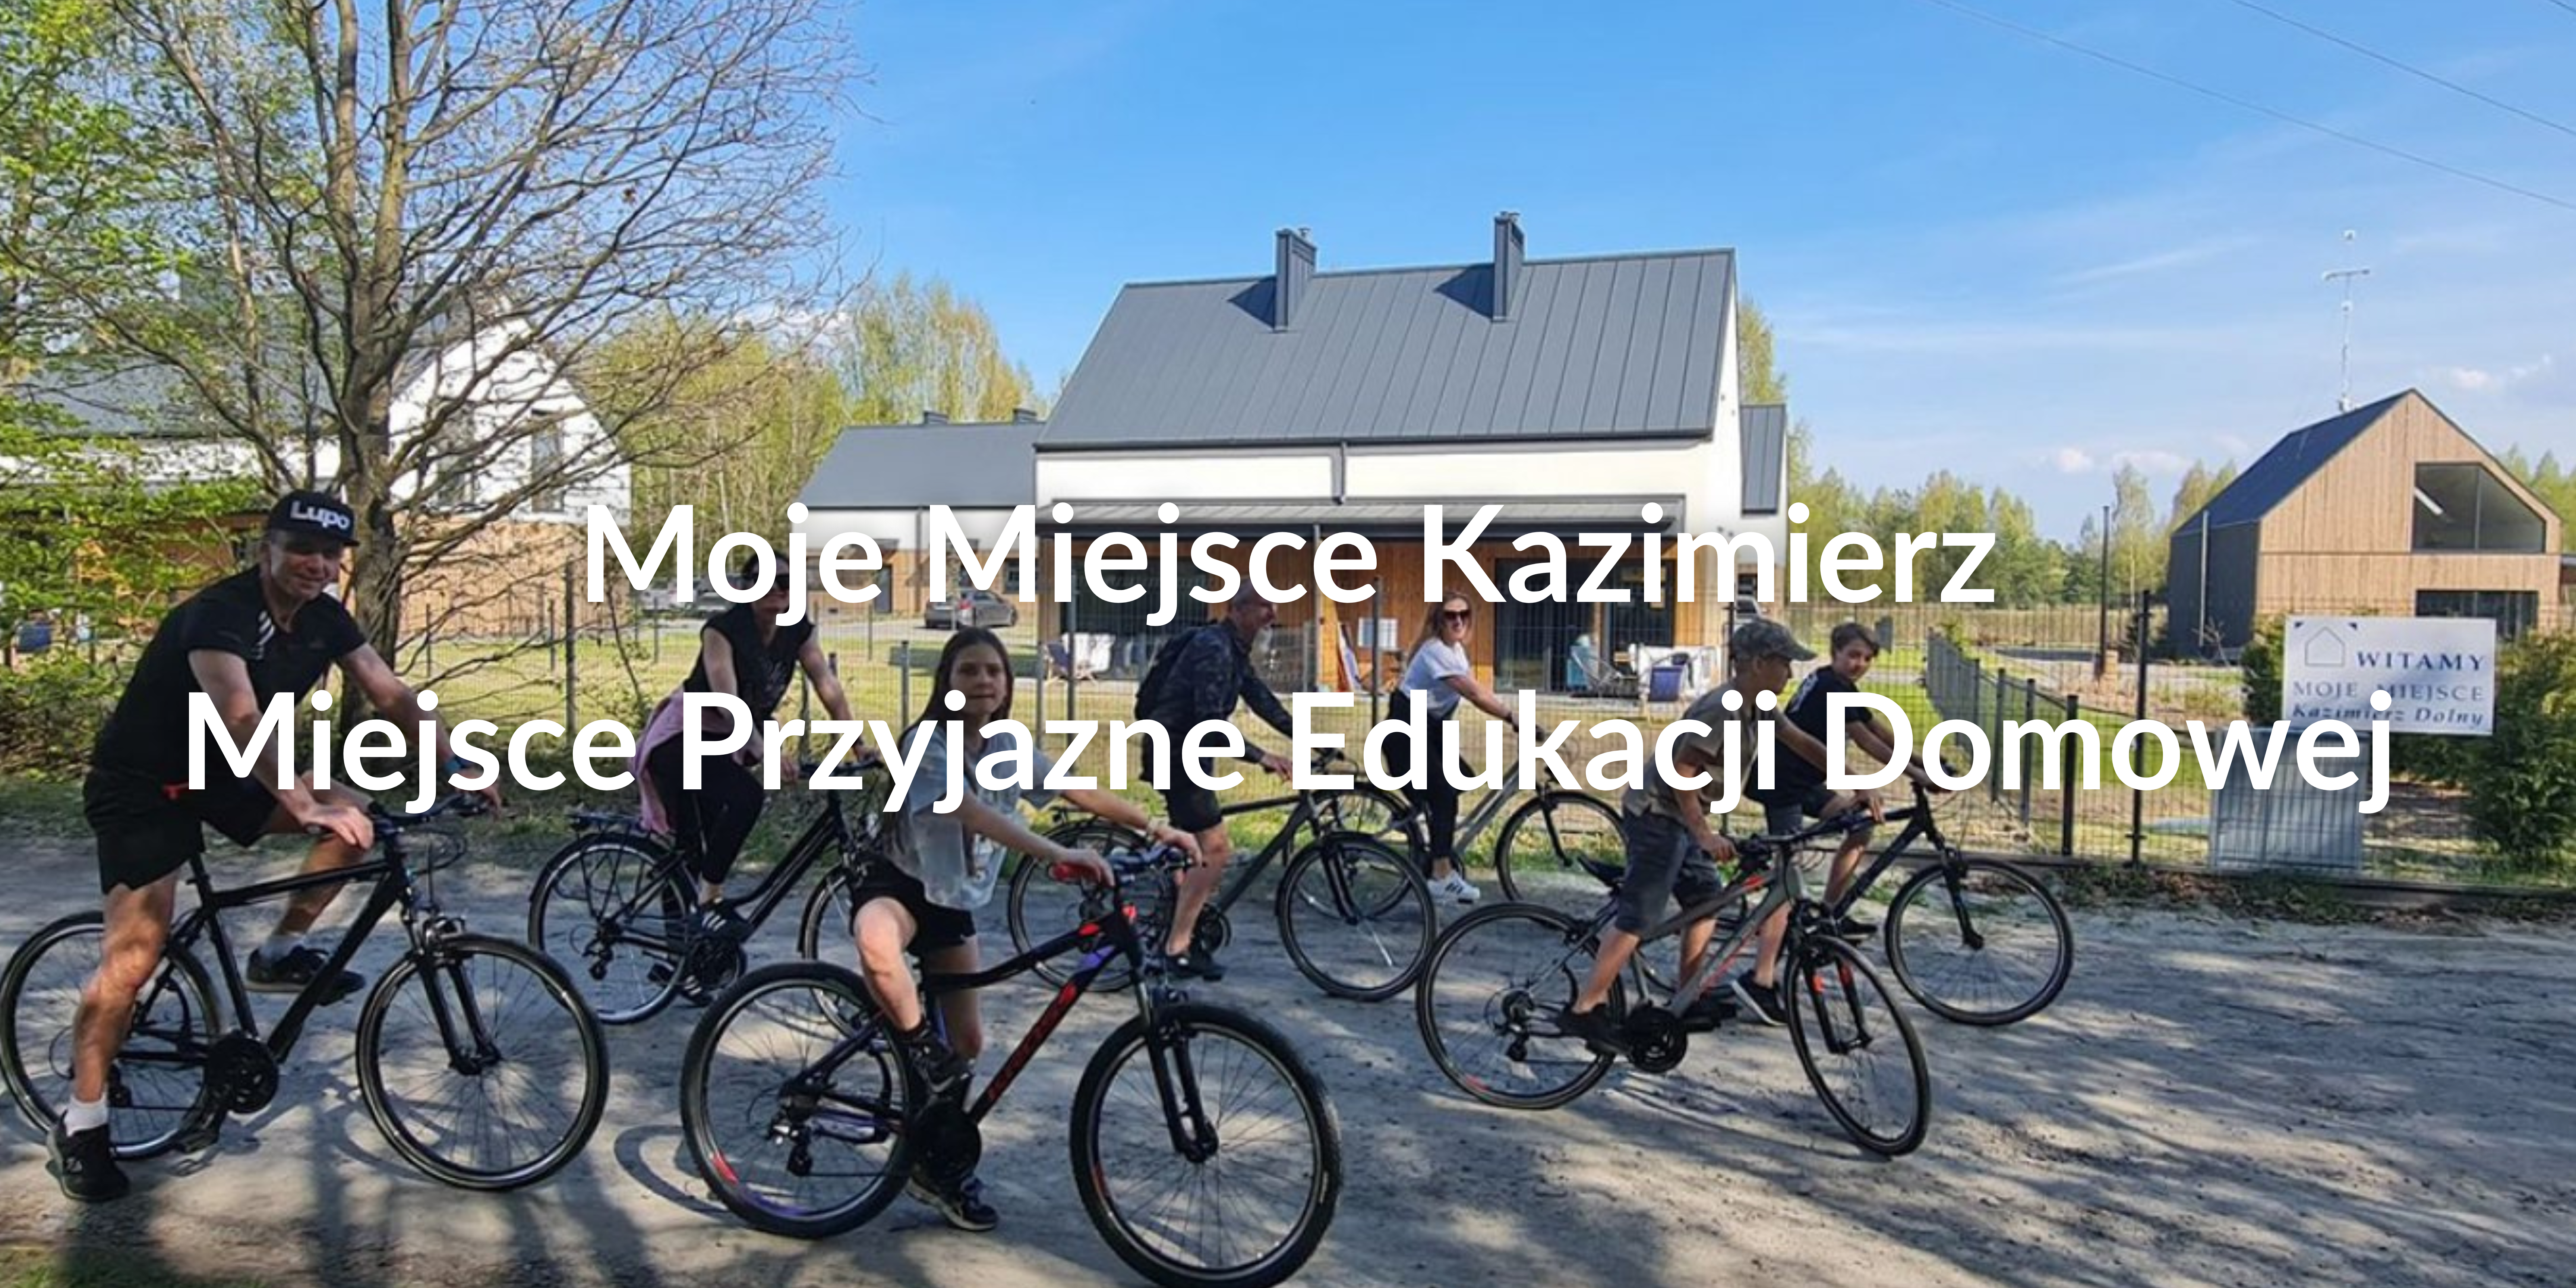 Moje Miejsce Kazimierz – Miejsce Przyjazne Edukacji Domowej